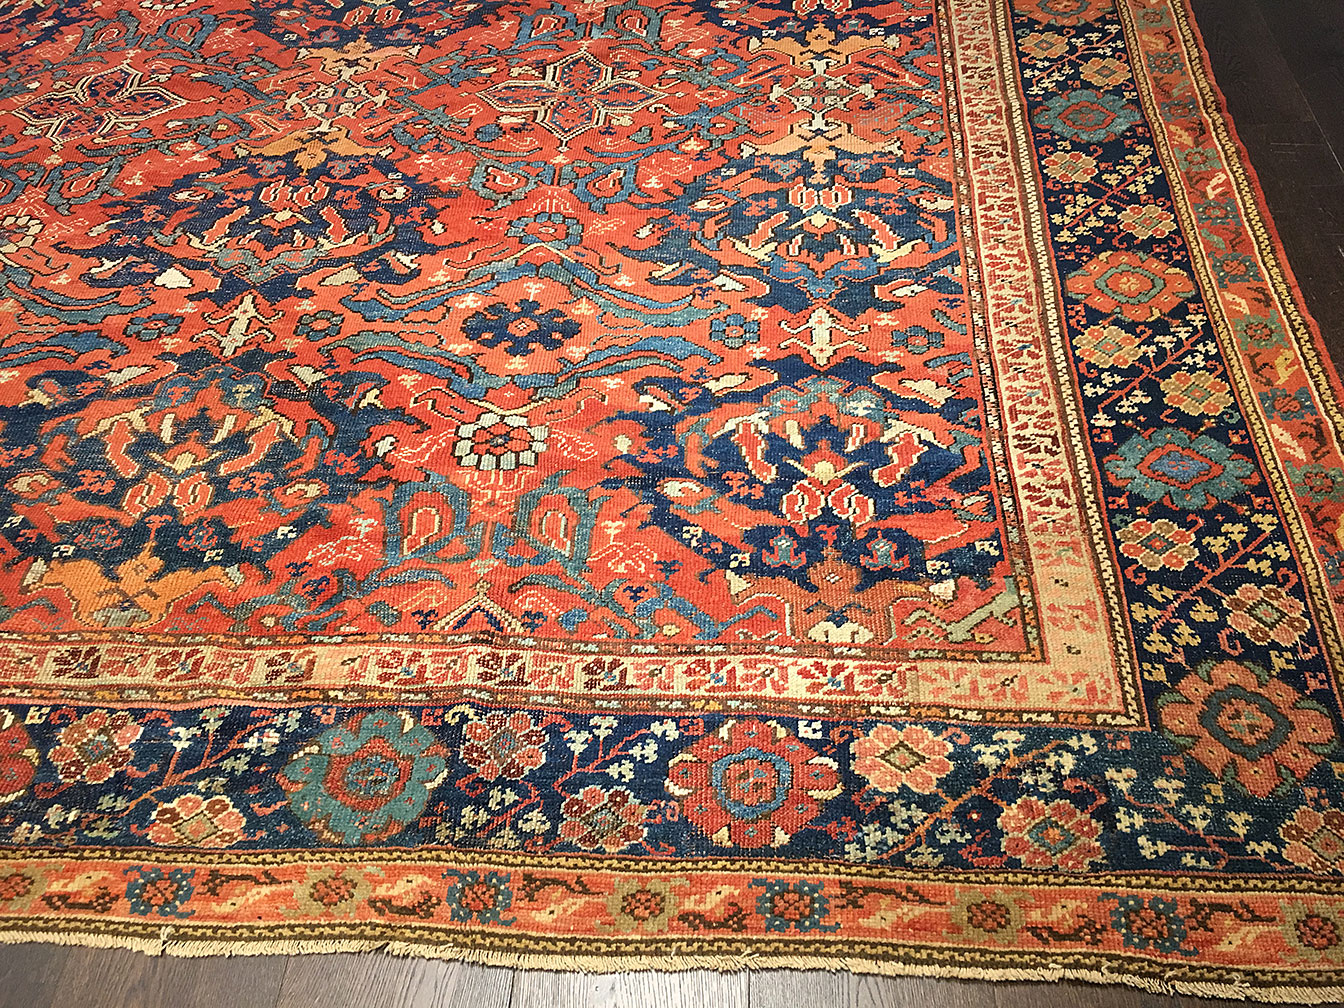 Antique smyrna Carpet - # 52165